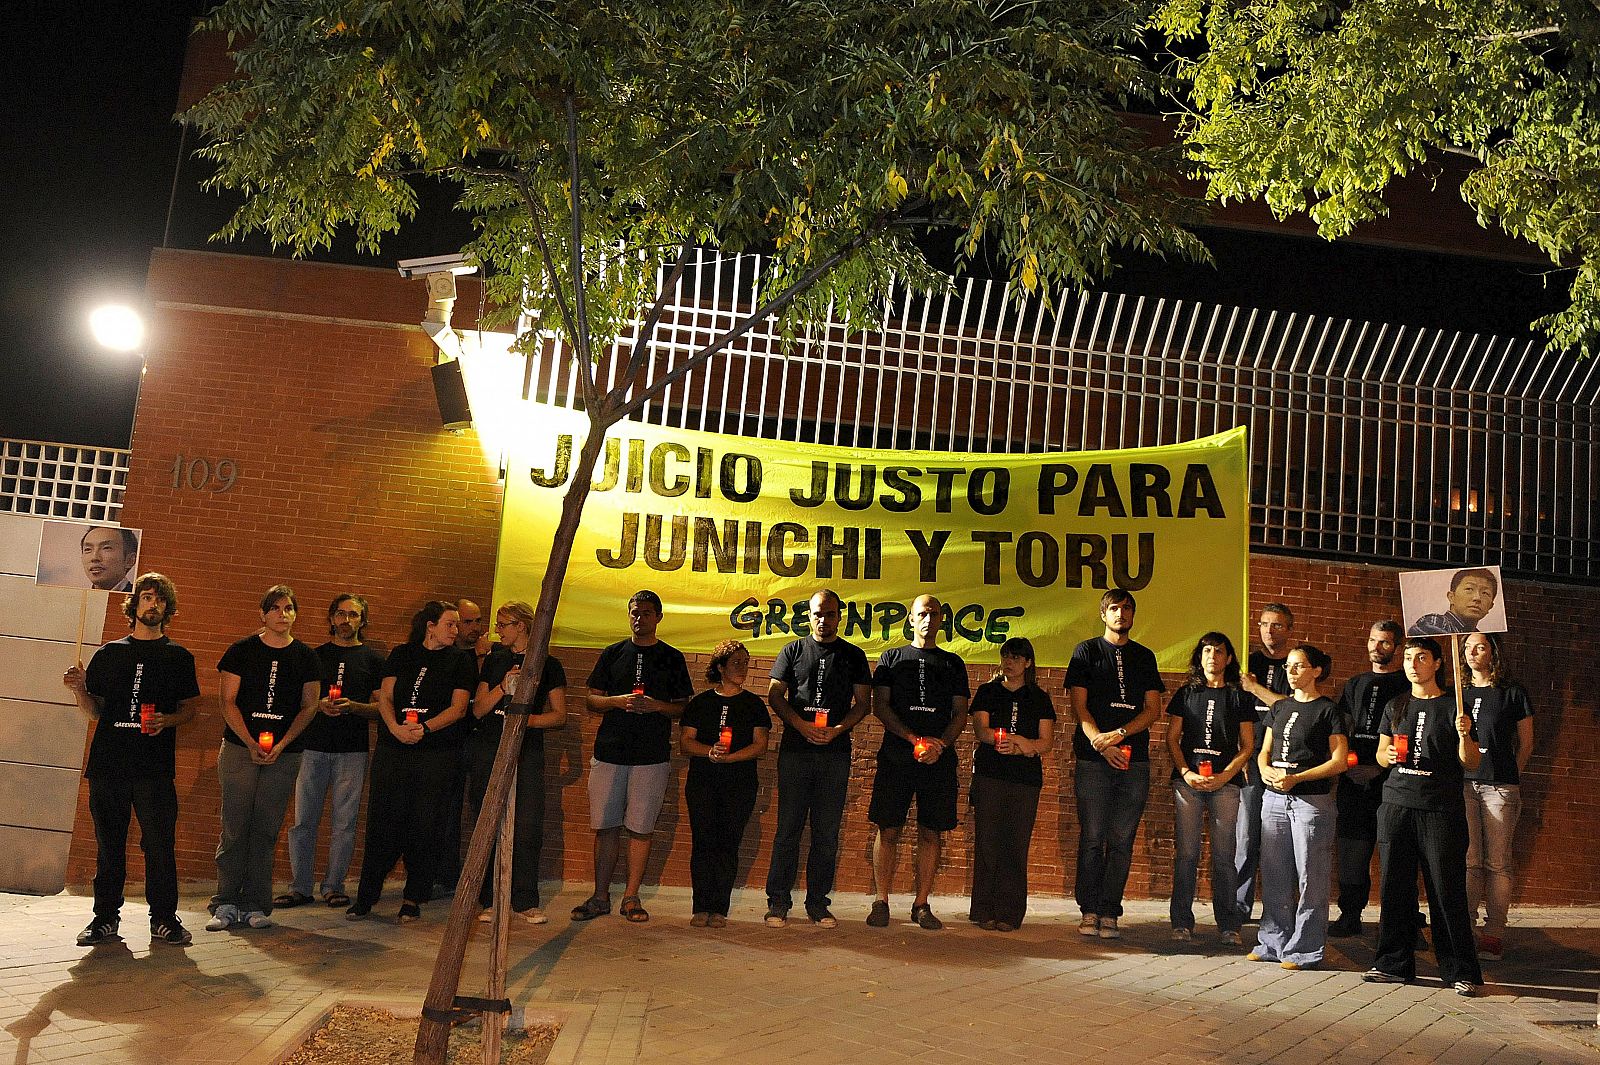 Miembros de Greenpeace se manifiestan frente a la embajada de Japón, en apoyo de Junichi Sato y Toru Suzuki